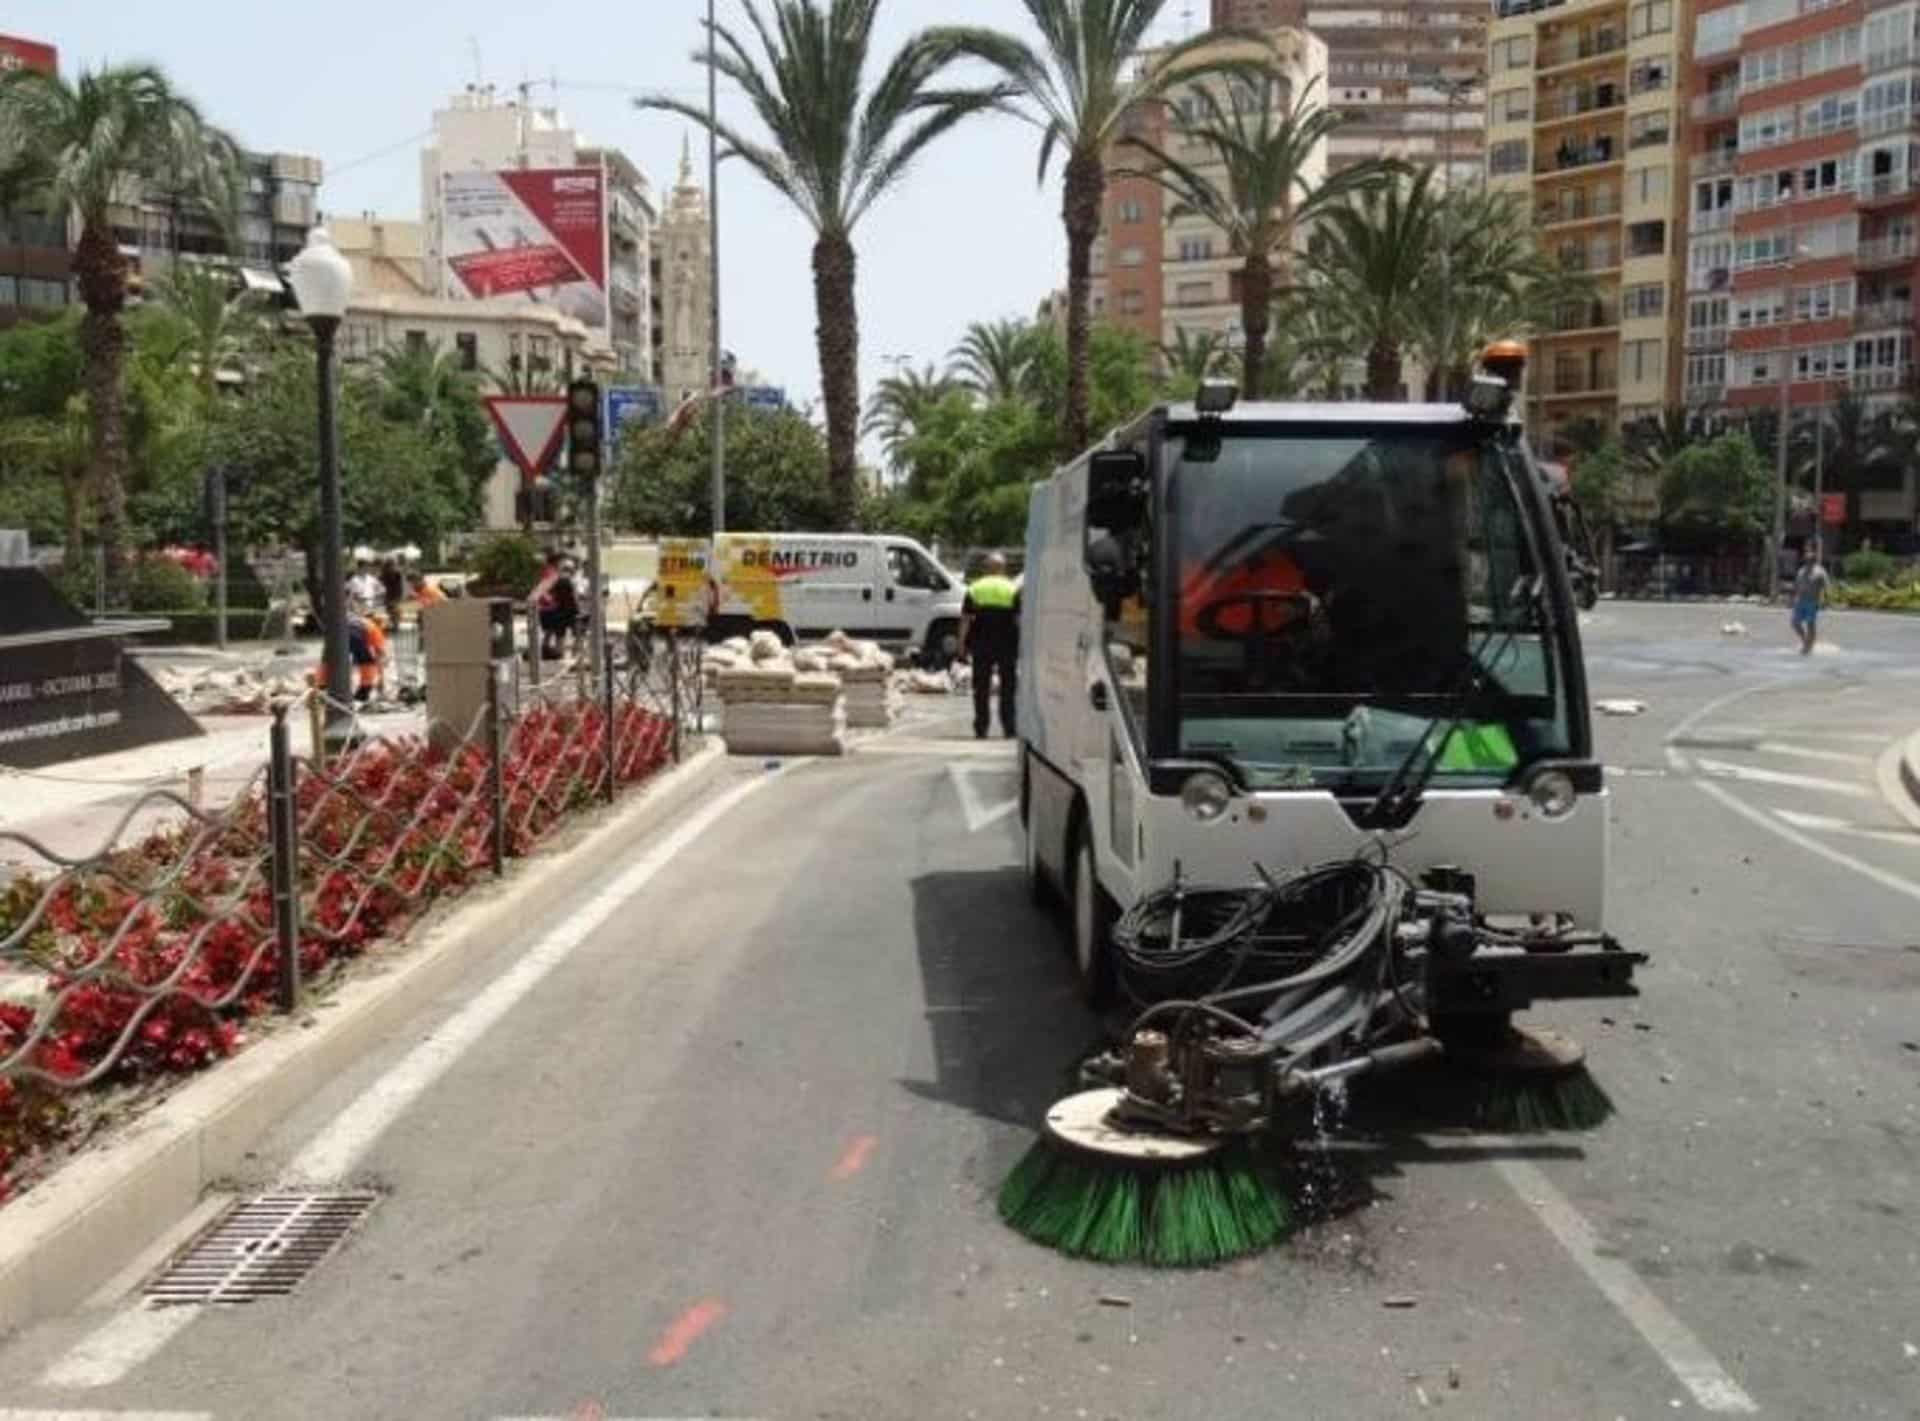 El Ayuntamiento redobla la limpieza de Luceros tras la mascletà con 15 operarios, seis barredoras y baldeo